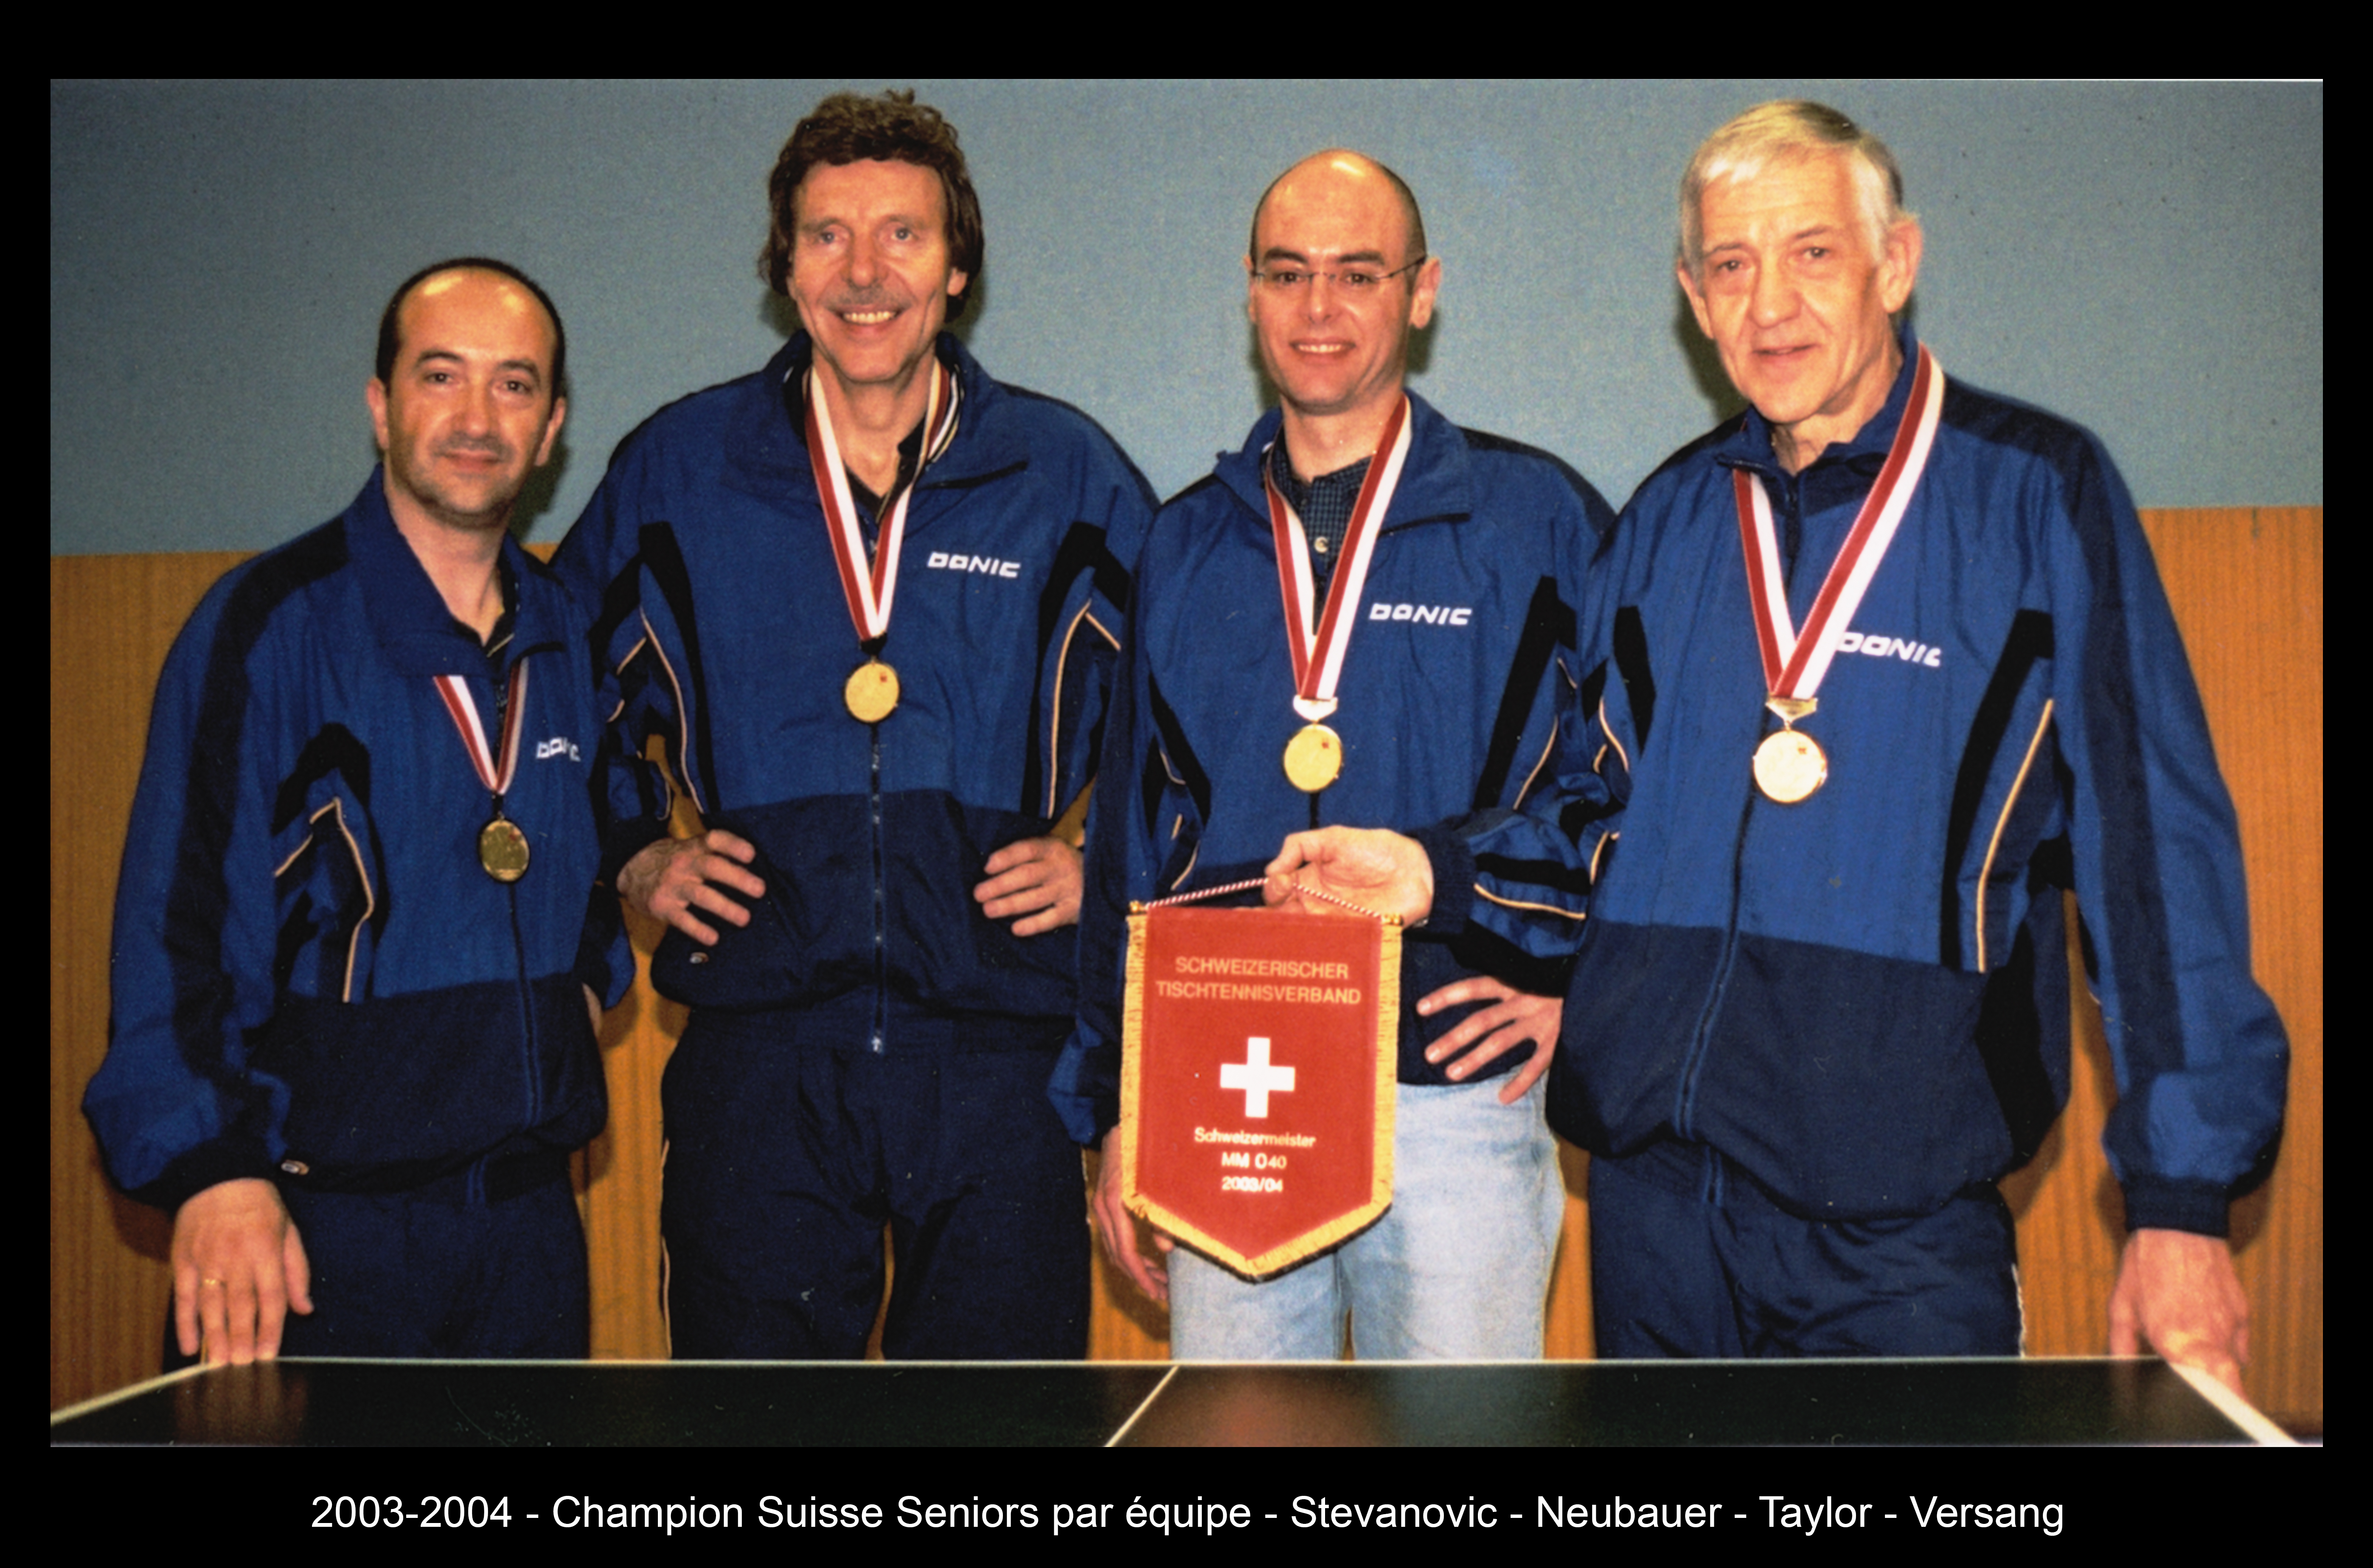 2003-2004 - Champion Suisse Seniors par équipe - Stevanovic - Neubauer - Taylor - Versang